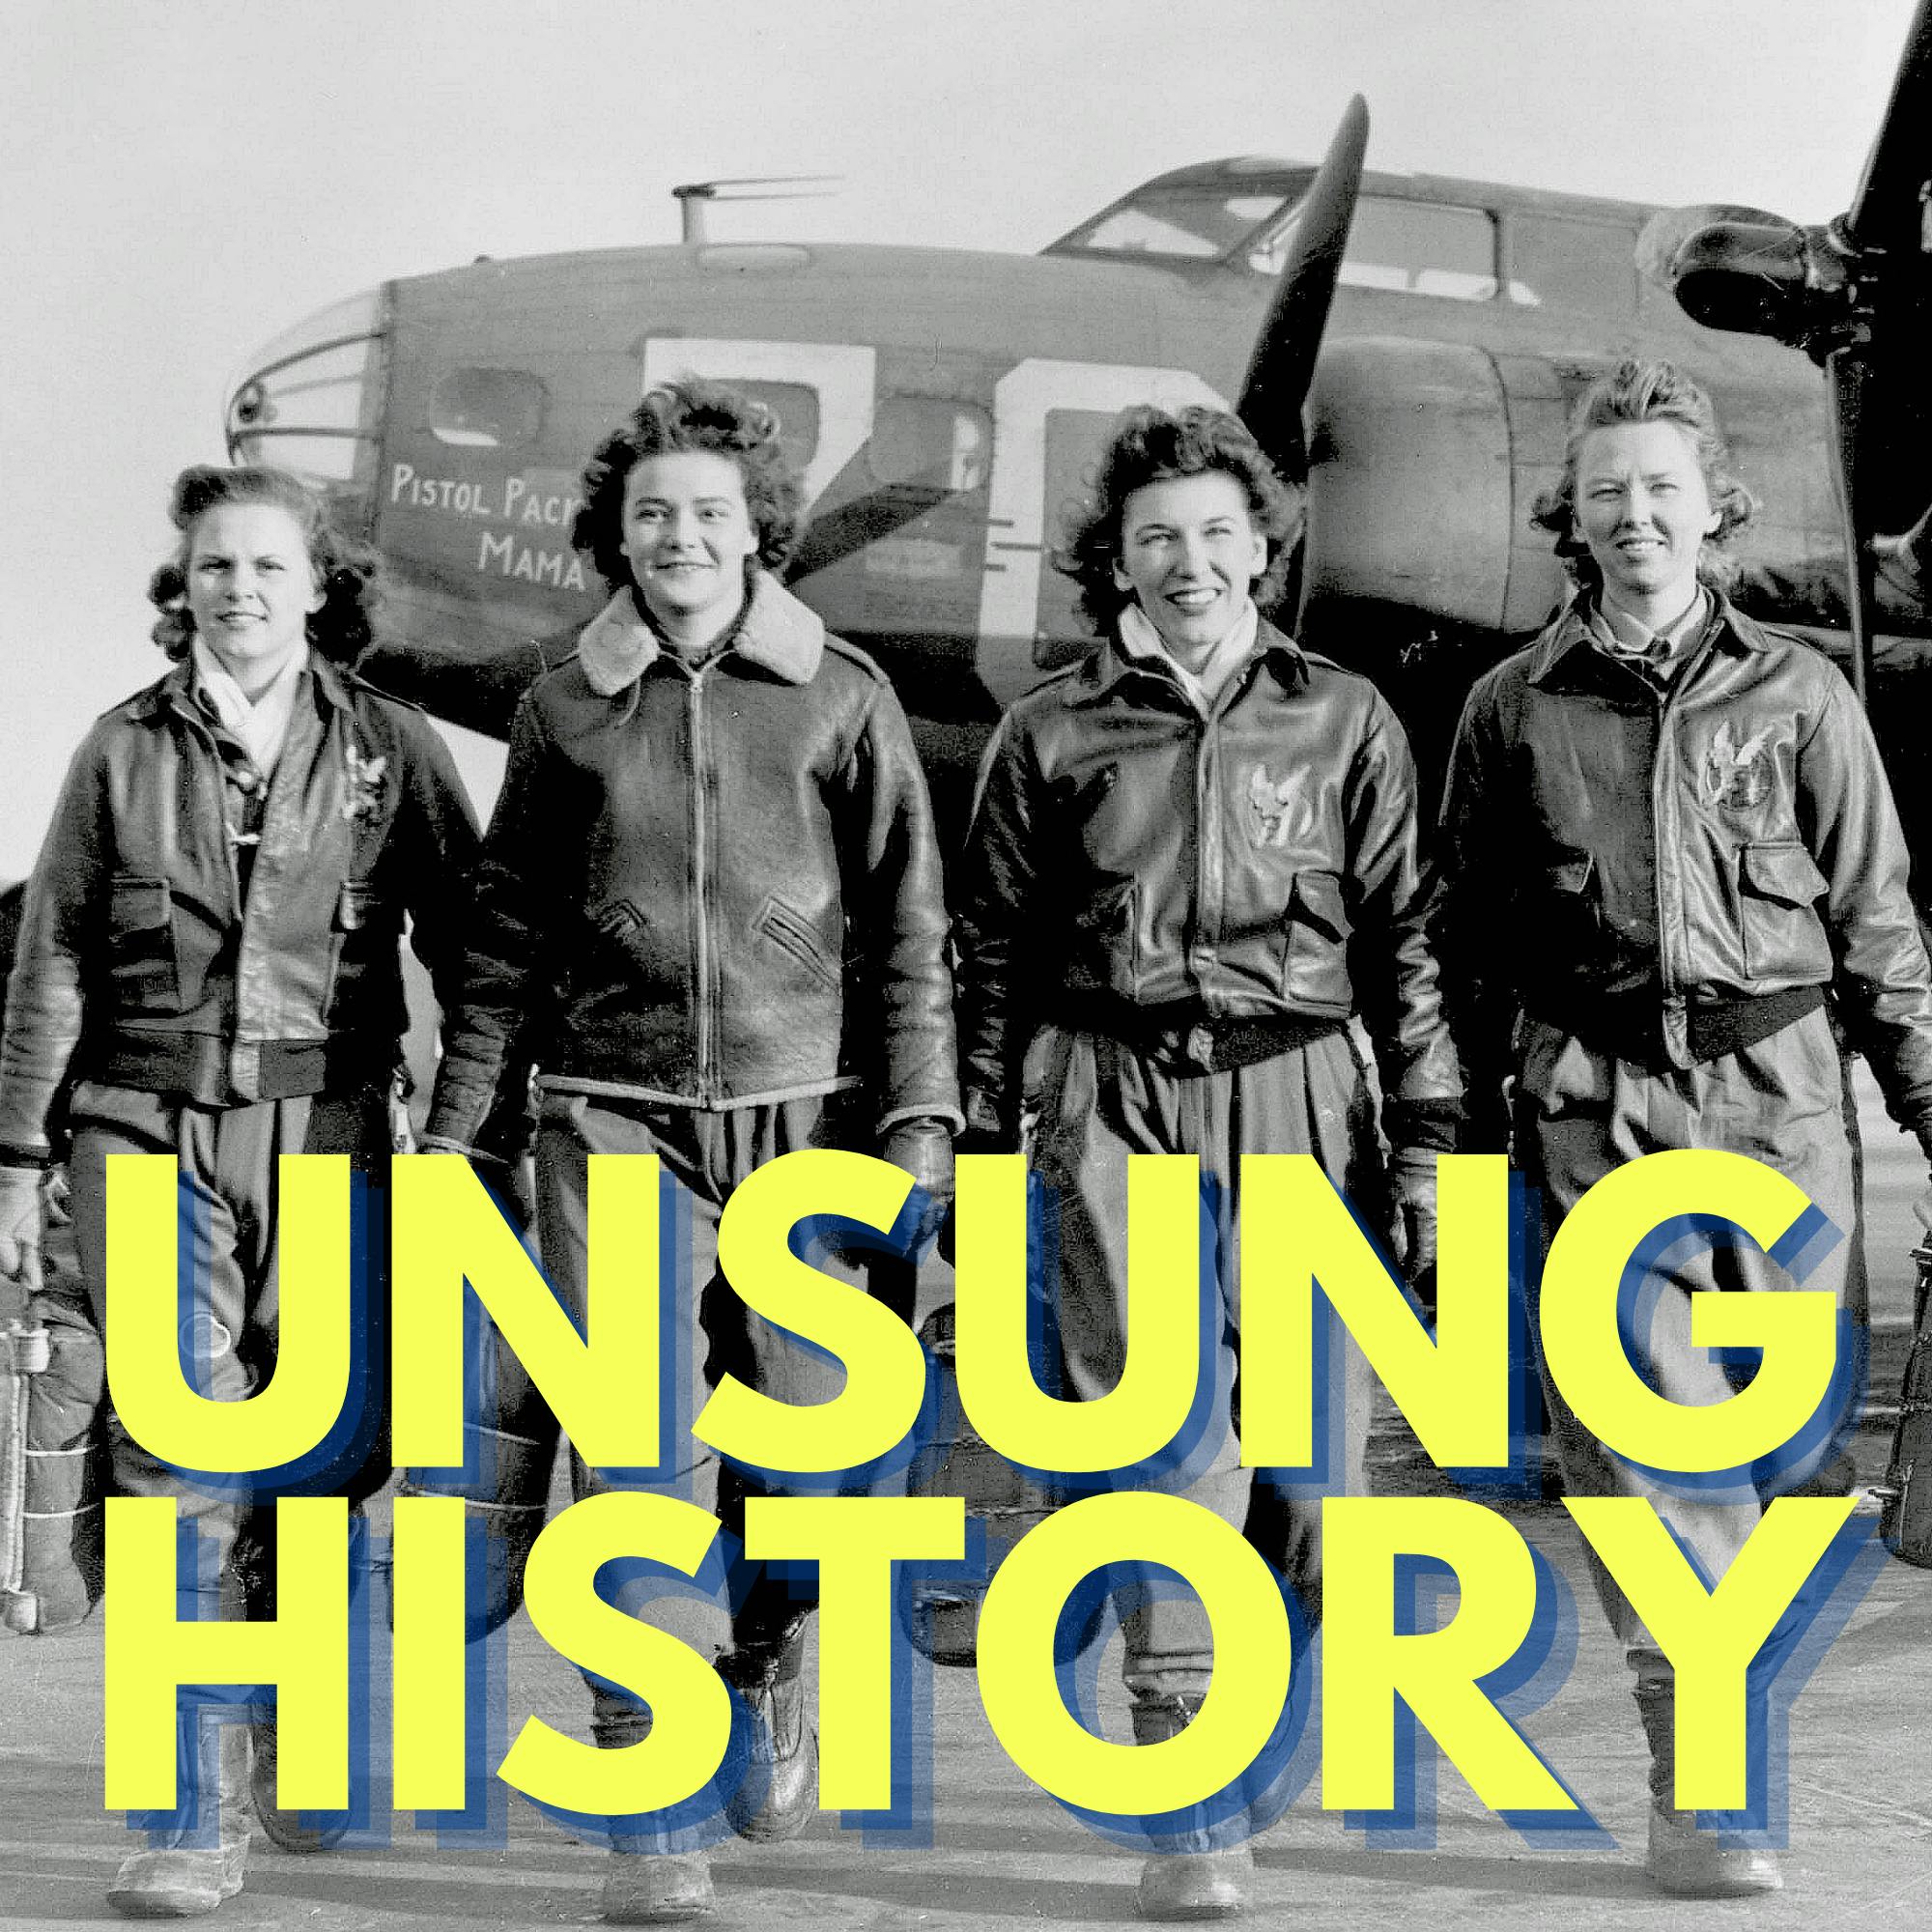 The Women Airforce Service Pilots of World War II